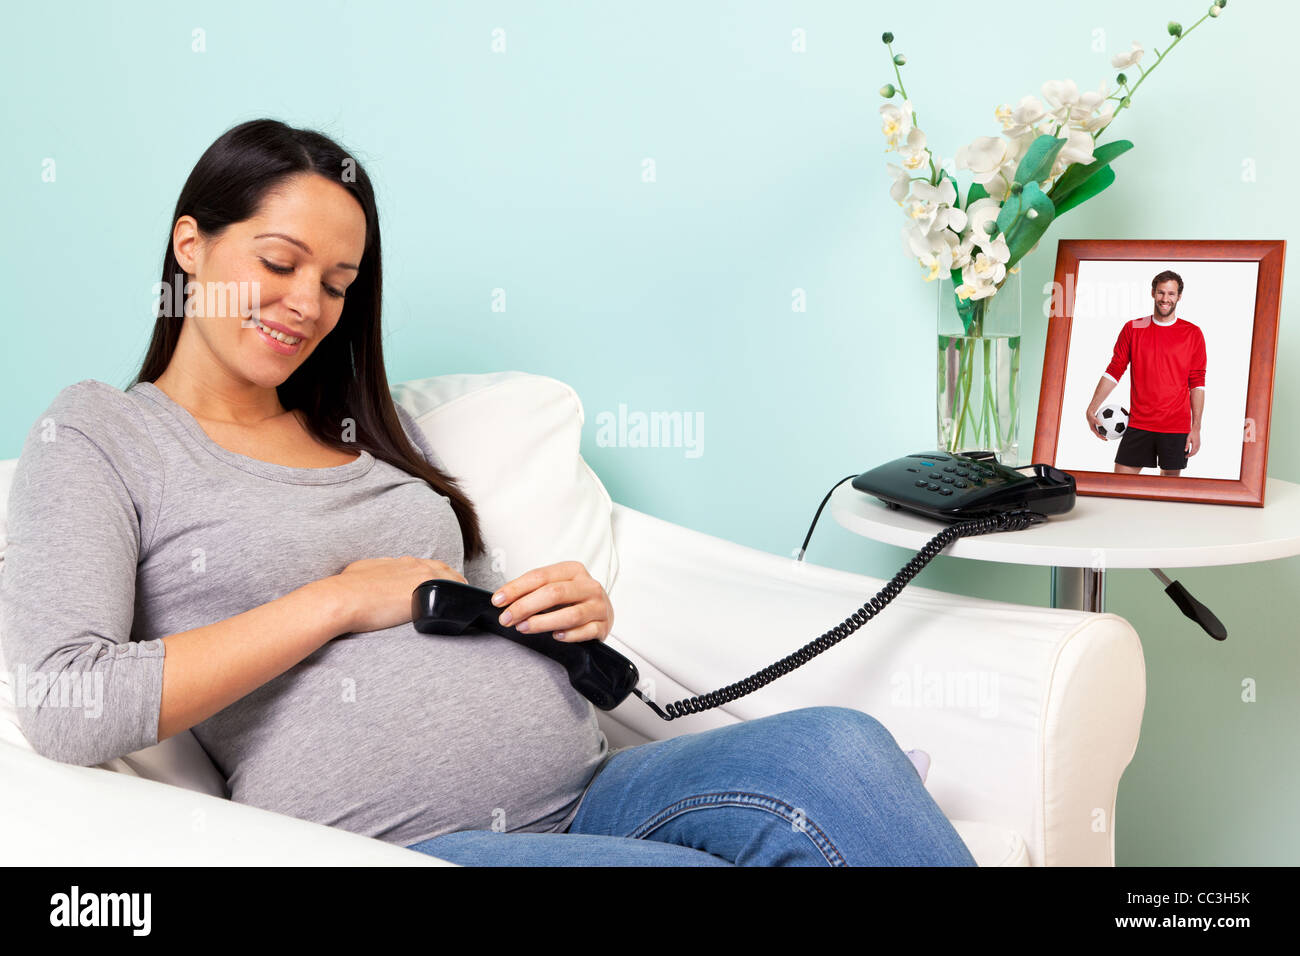 Foto von einer schwangeren Frau zu Hause mit einem Telefonhörer auf ihrem Bauch, Konzept des Vaters sprechen und zuhören baby Stockfoto